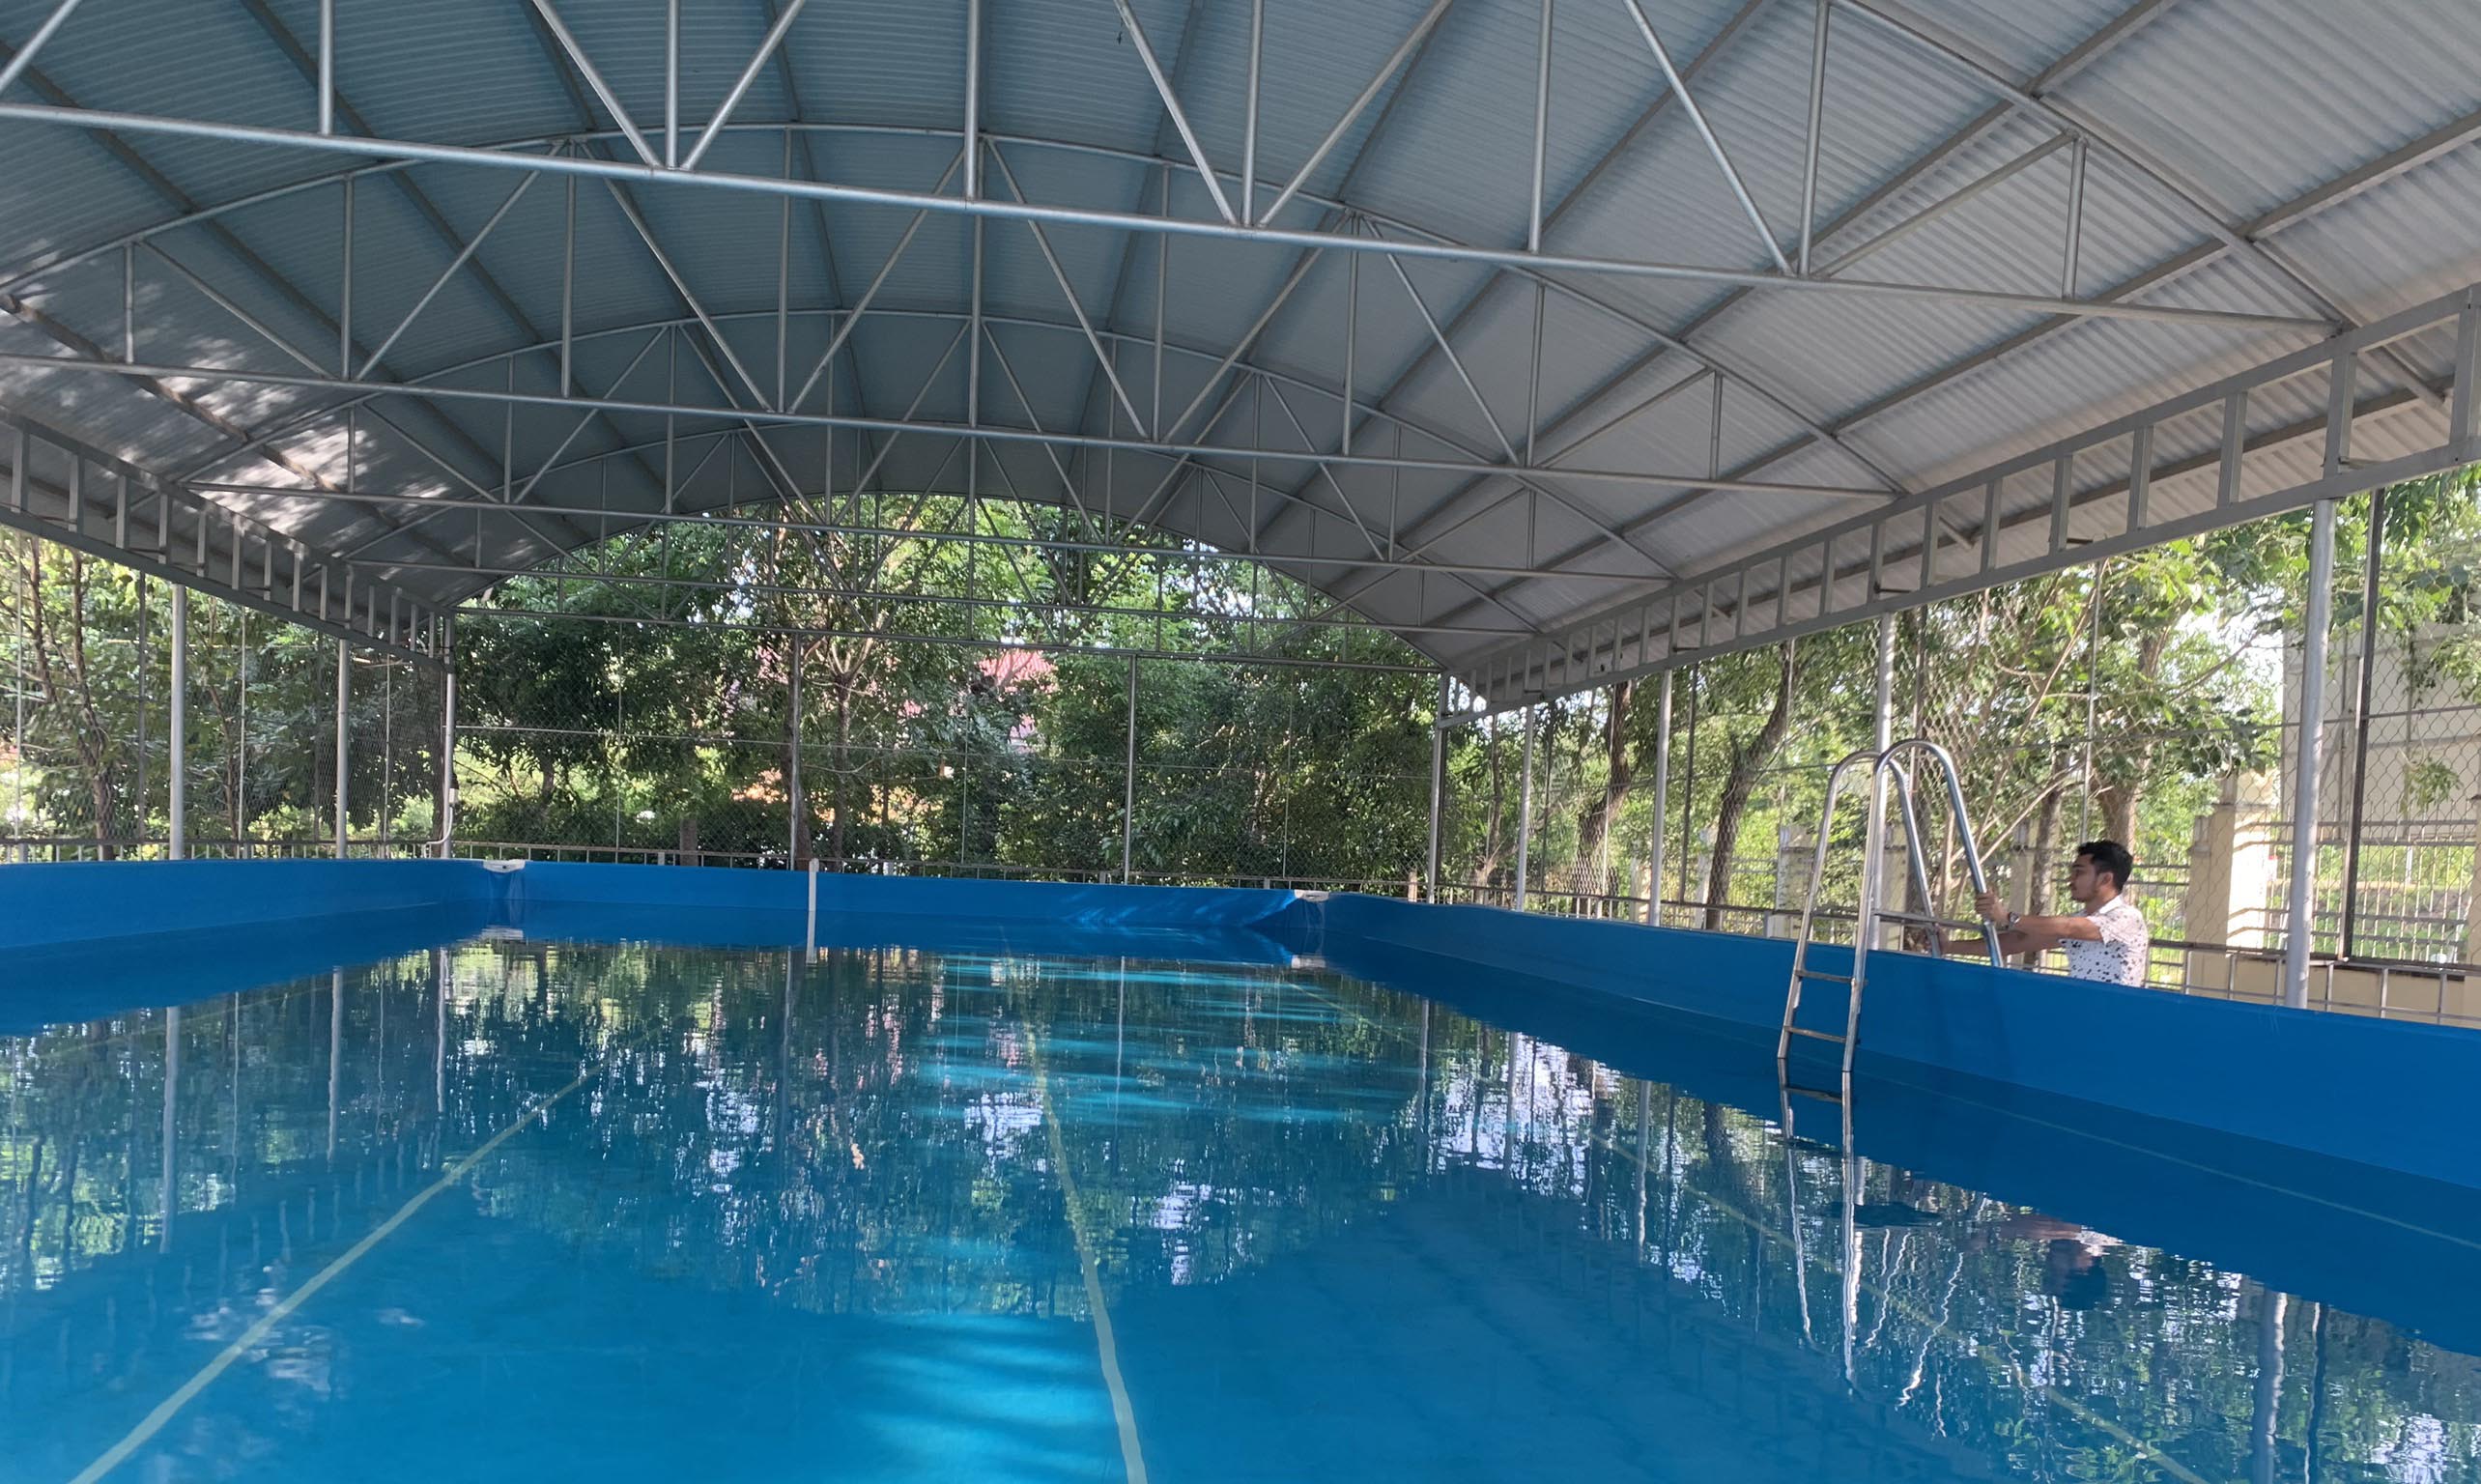 Hồ bơi thông minh lắp đặt tại Trường Tiểu học và THCS Nguyễn Viết Xuân (xã Ia Rtô) được đầu tư hơn 400 triệu đồng nhưng ít sử dụng. Ảnh: Nguyên Hương